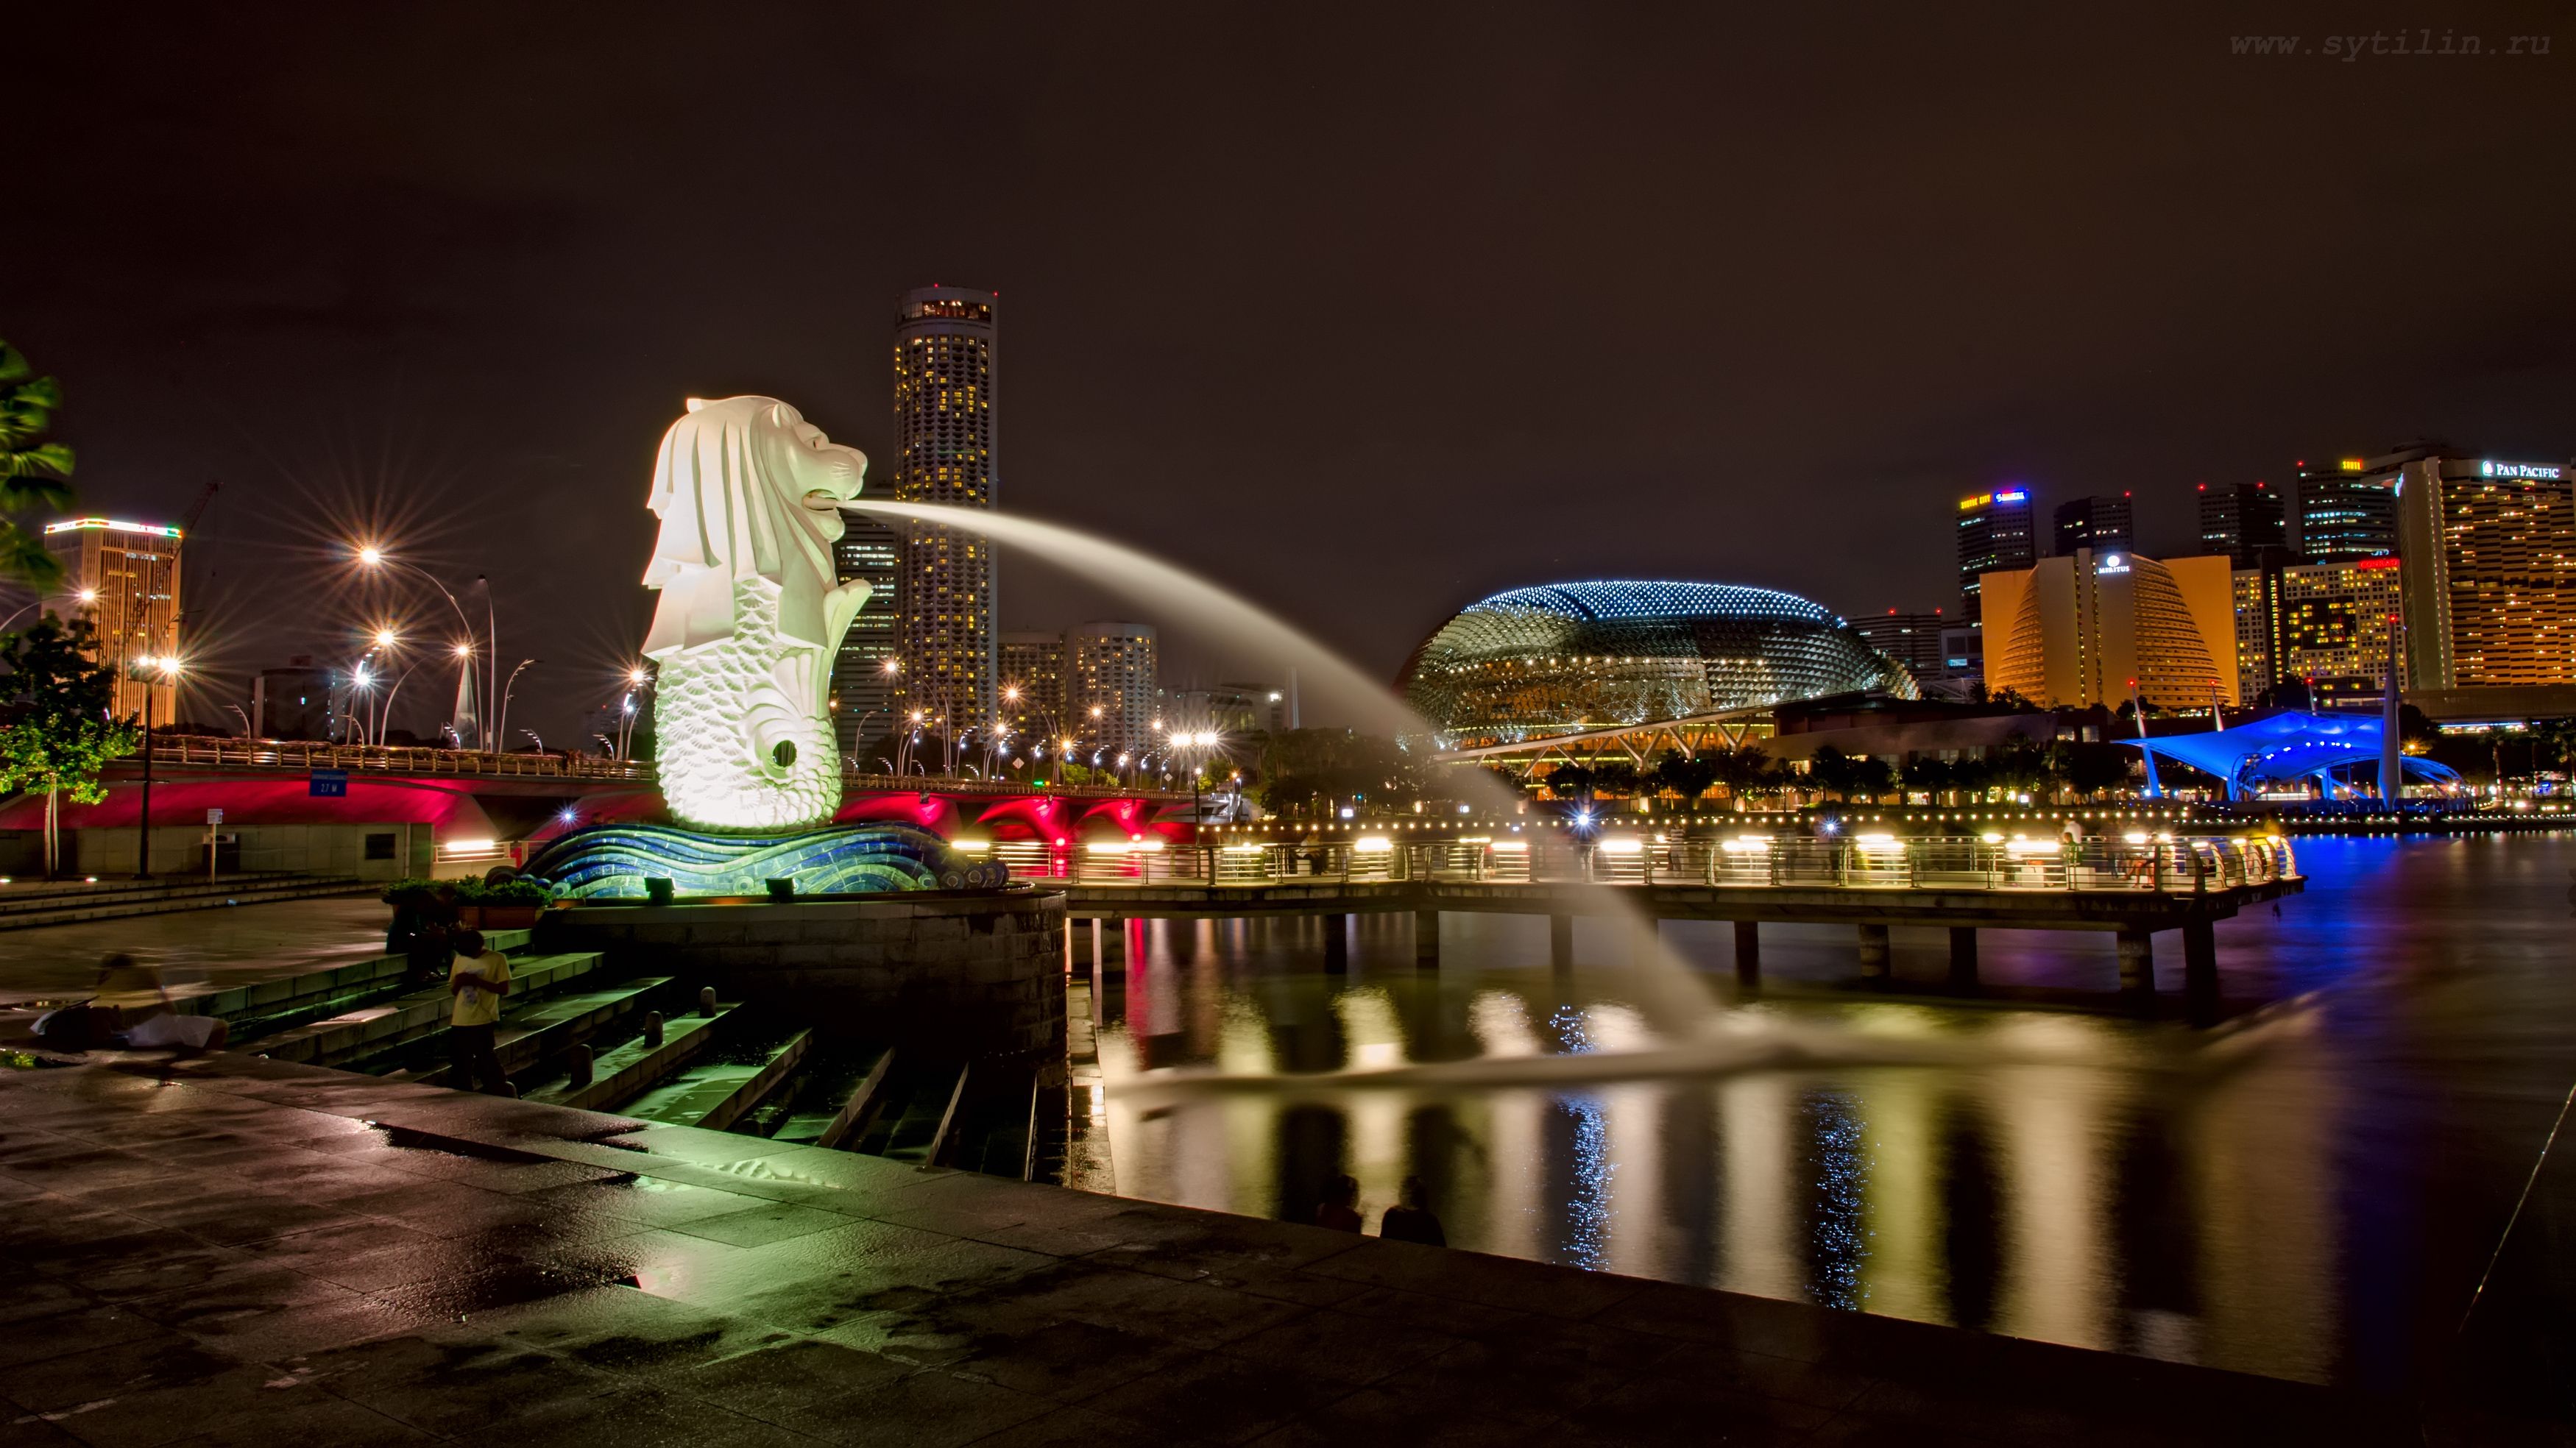 Сингапур, Мерлион, статуя, символ, ночь, яркий, фонтан, достопримечательность, лев, азия, юго-восток, архитектура, ночной, Сытилин Павел